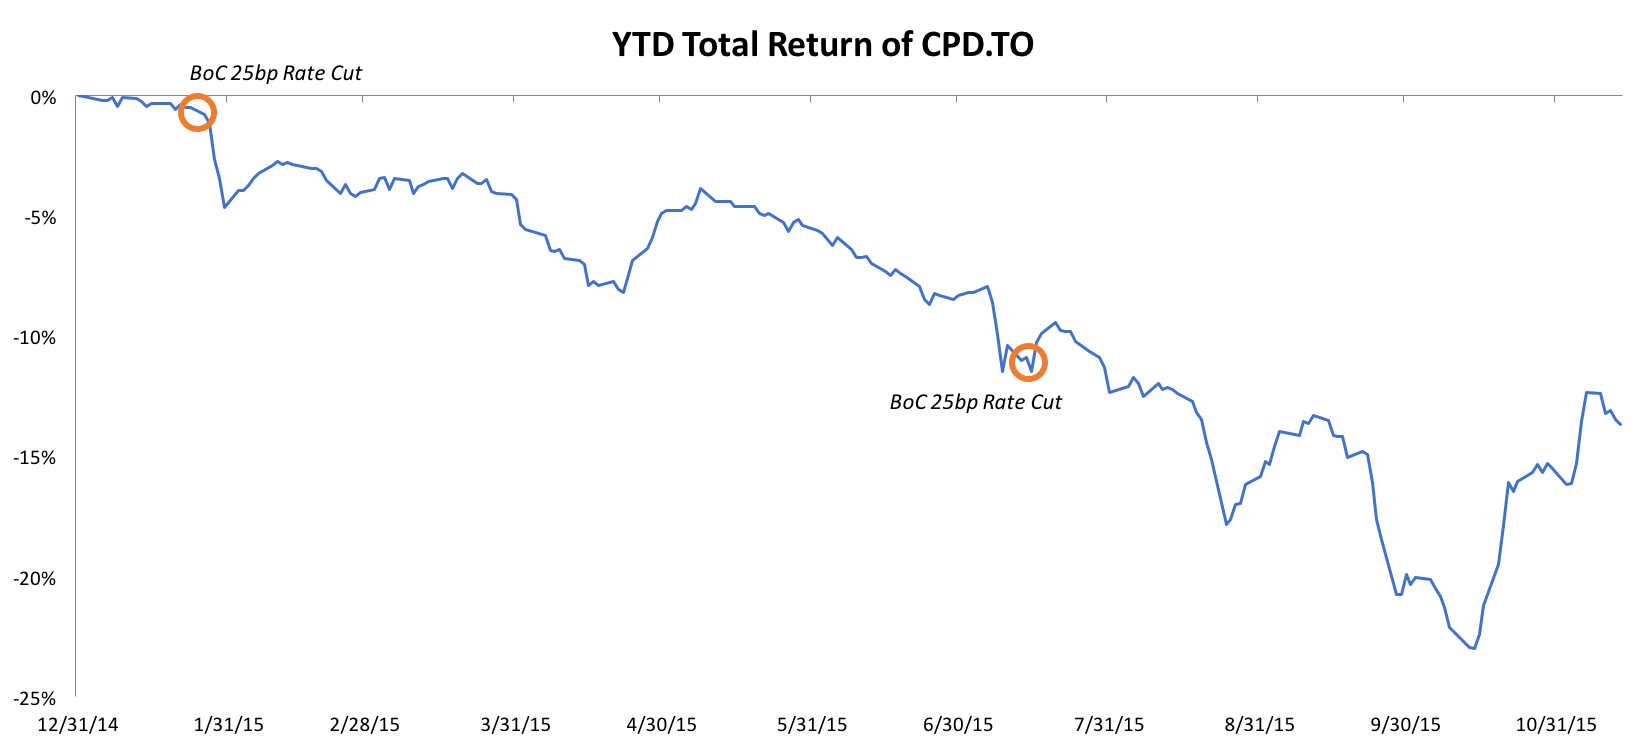 CPD YTD Return - Canadian preferreds lose 20%